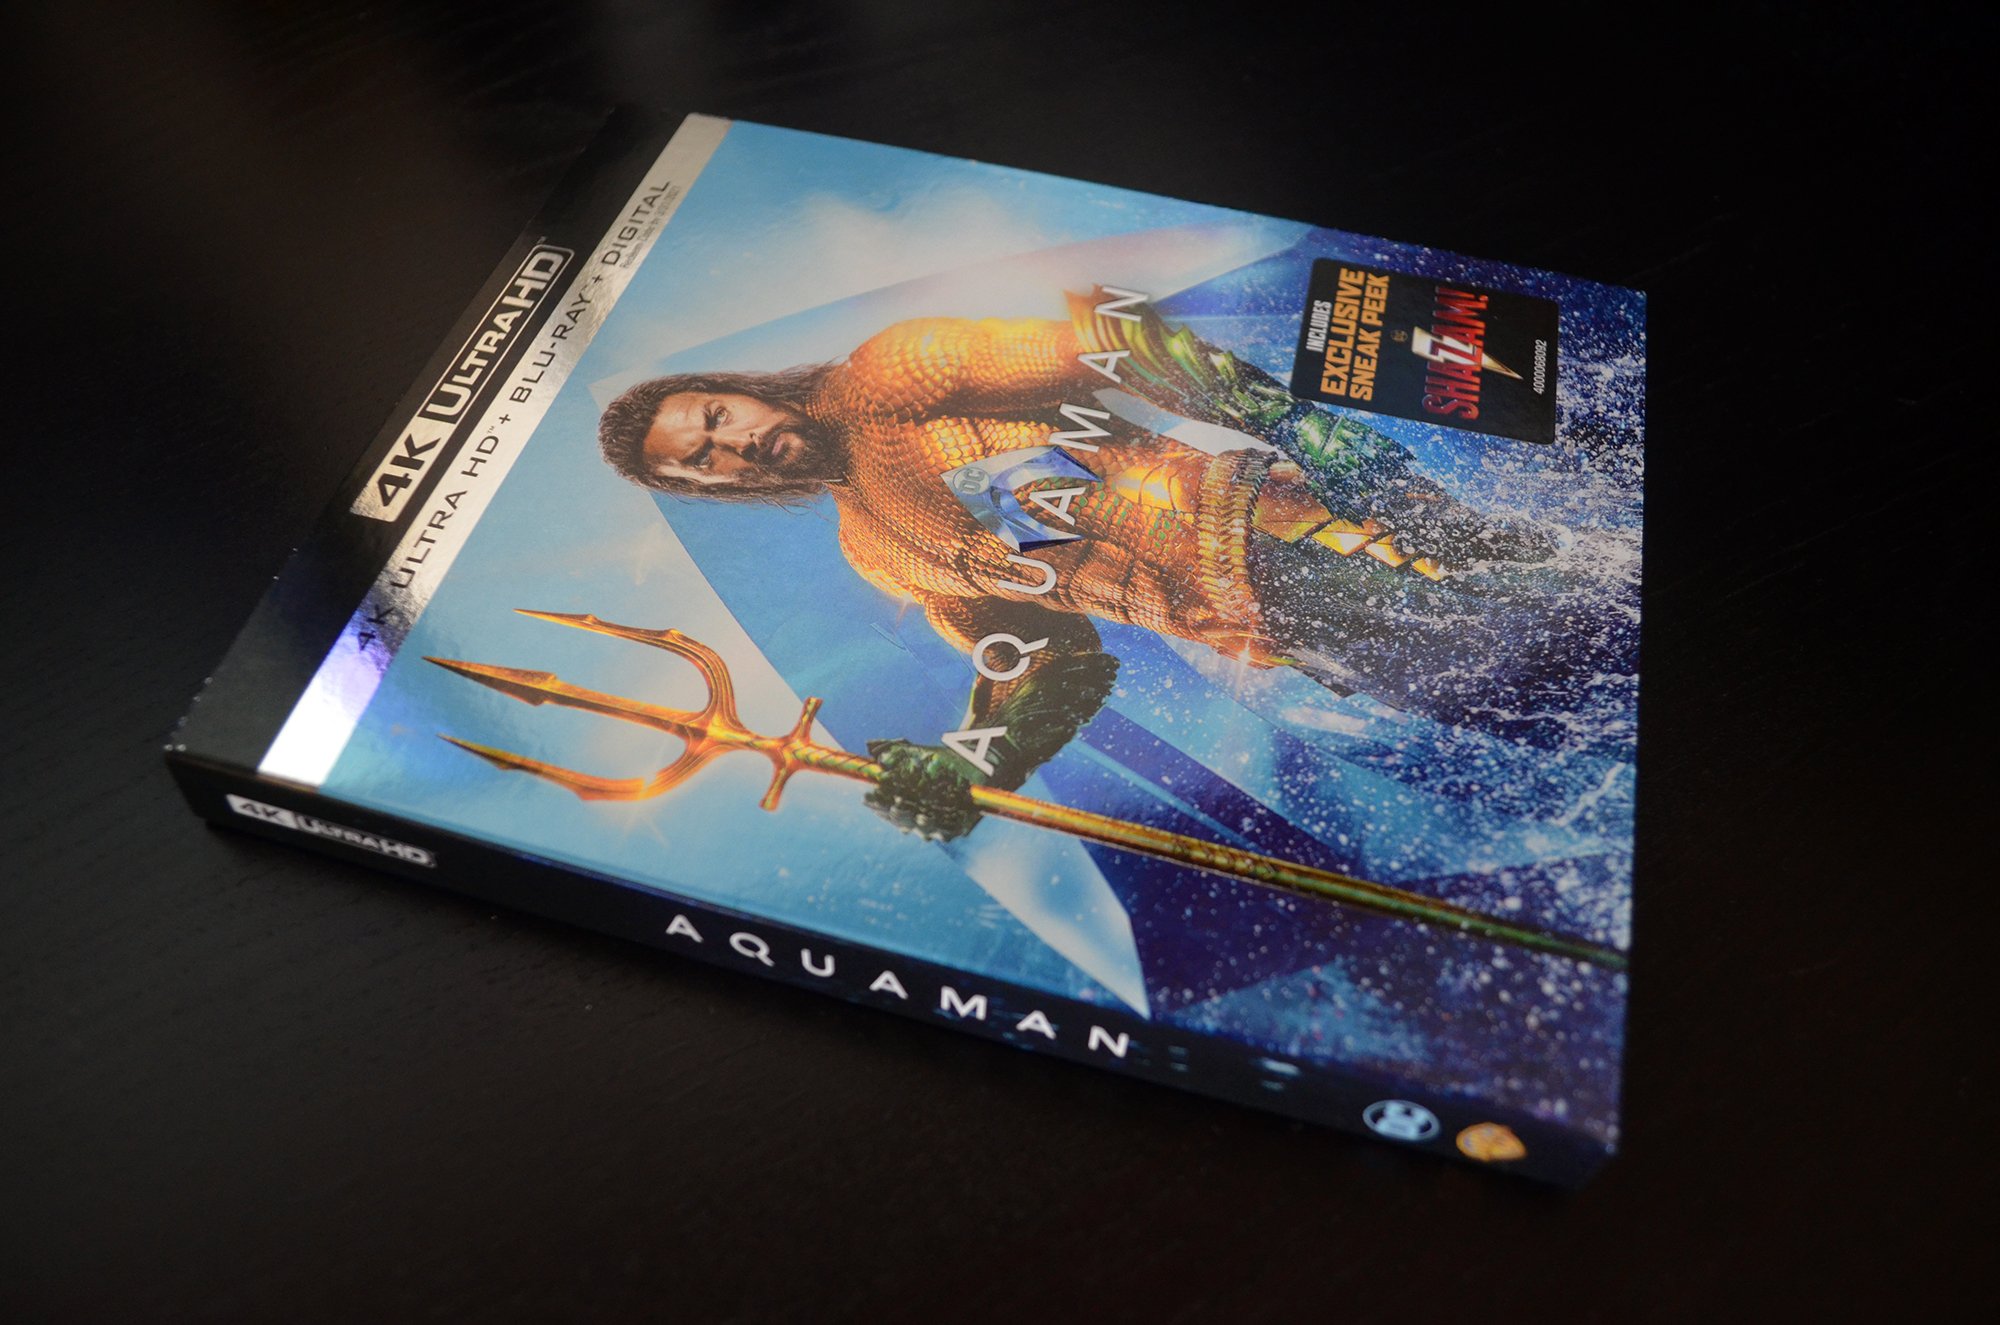 Aquaman 4K Review